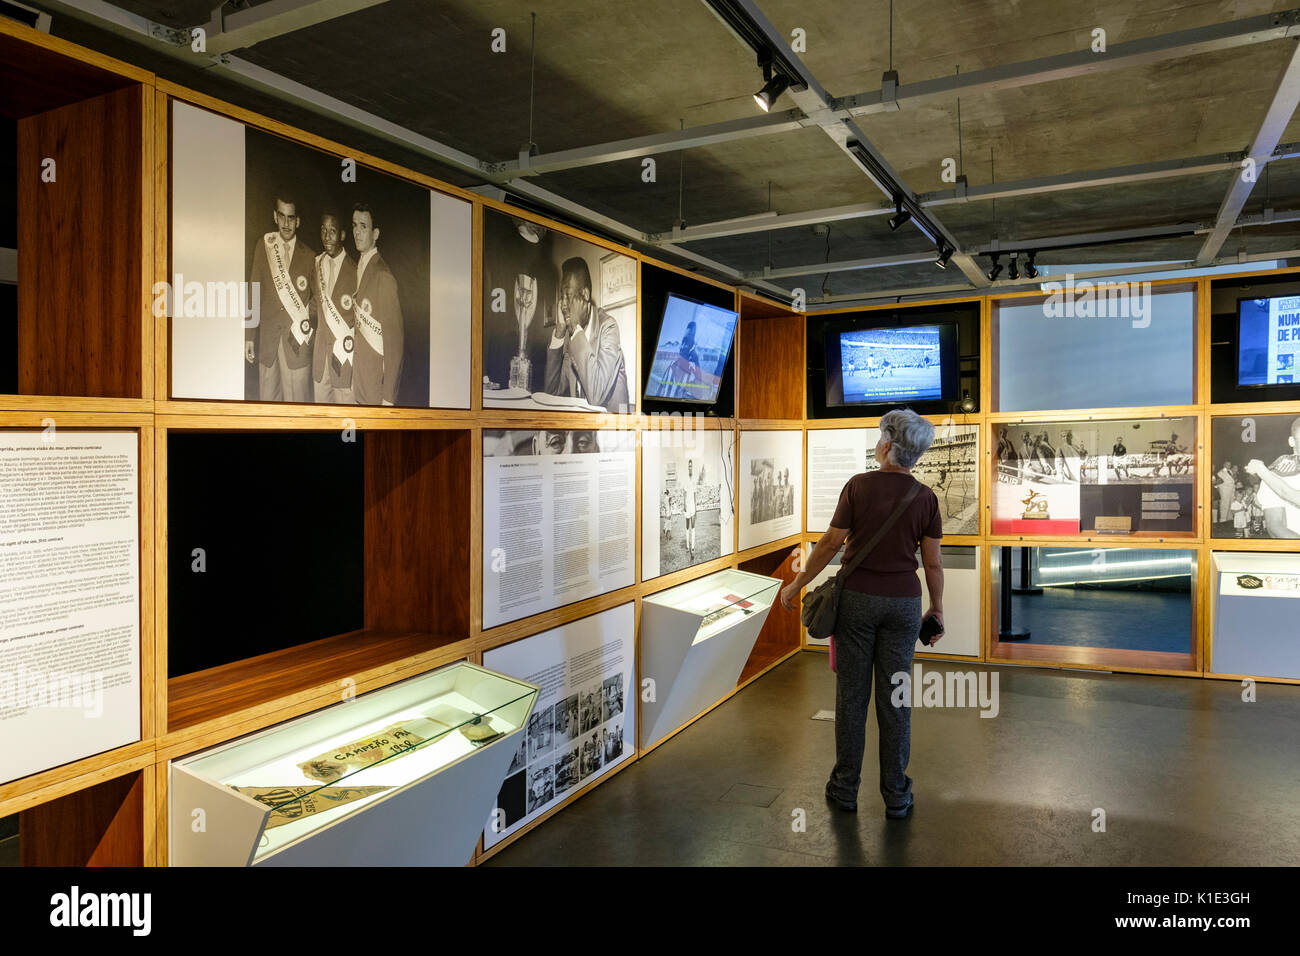 Piano terra visualizza della Pele Museum (Museu Pelé), dedicato al brasiliano della leggenda del calcio Edson Arantes do Nascimento, SANTOS, Brasile. Foto Stock